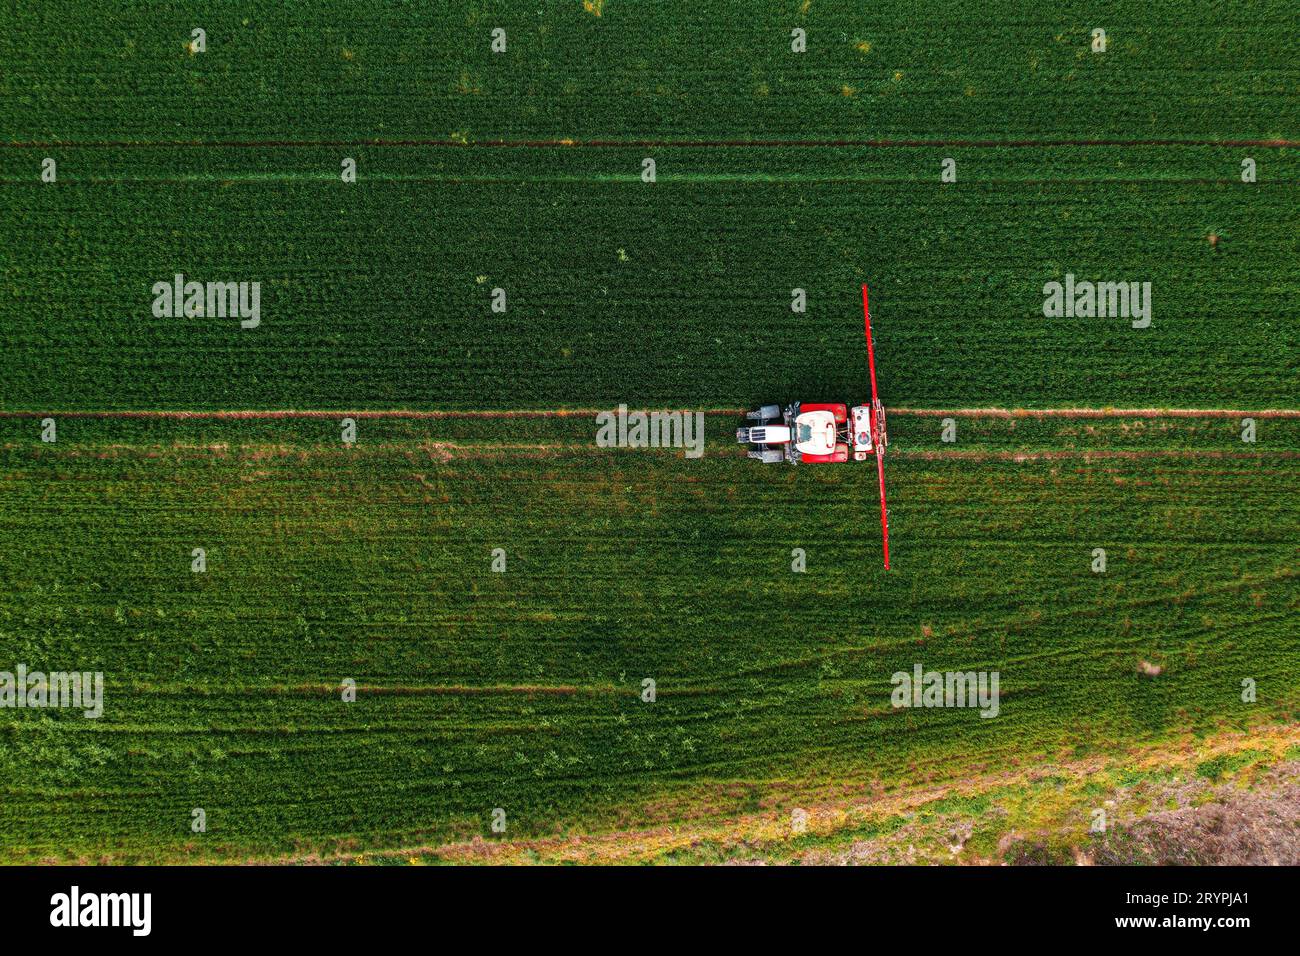 Luftaufnahme des Traktors mit Feldspritze auf Weizengrasfeld, pov-Draufsicht der Drohne Stockfoto